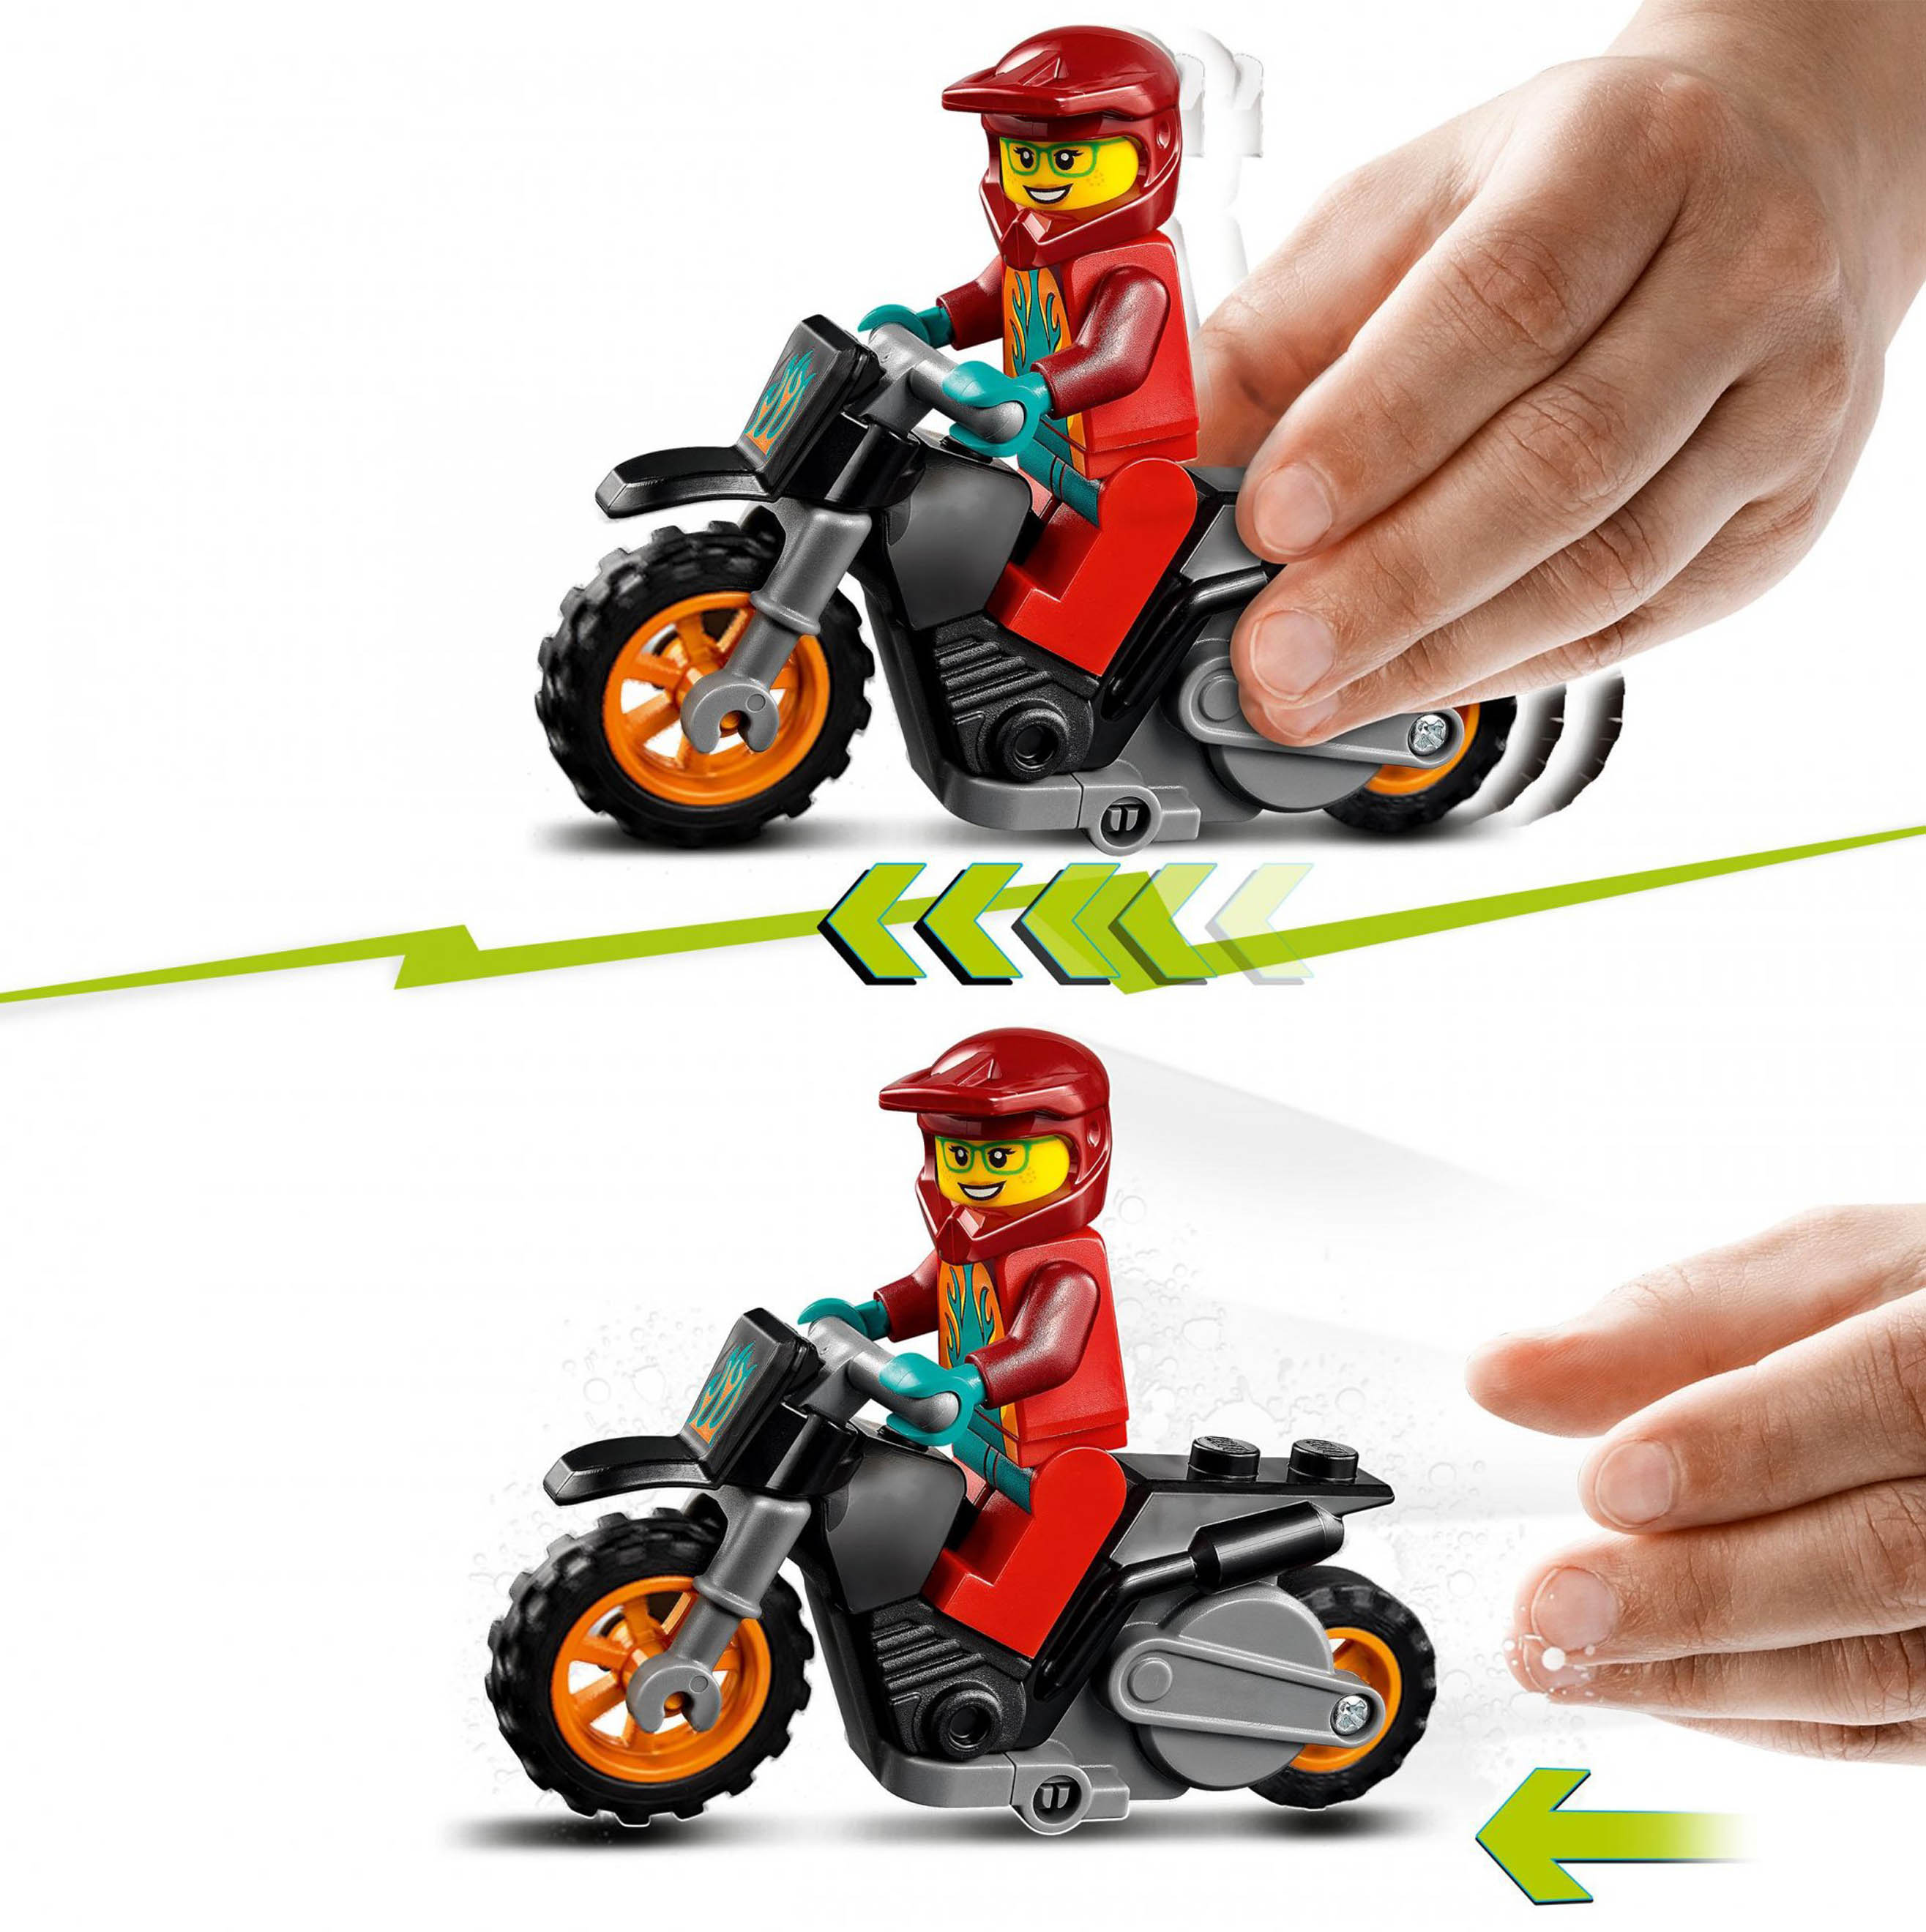 LEGO City Stuntz Stunt Bike Antincendio, Moto Giocattolo con Funzione &quot;Carica e 60311, , large